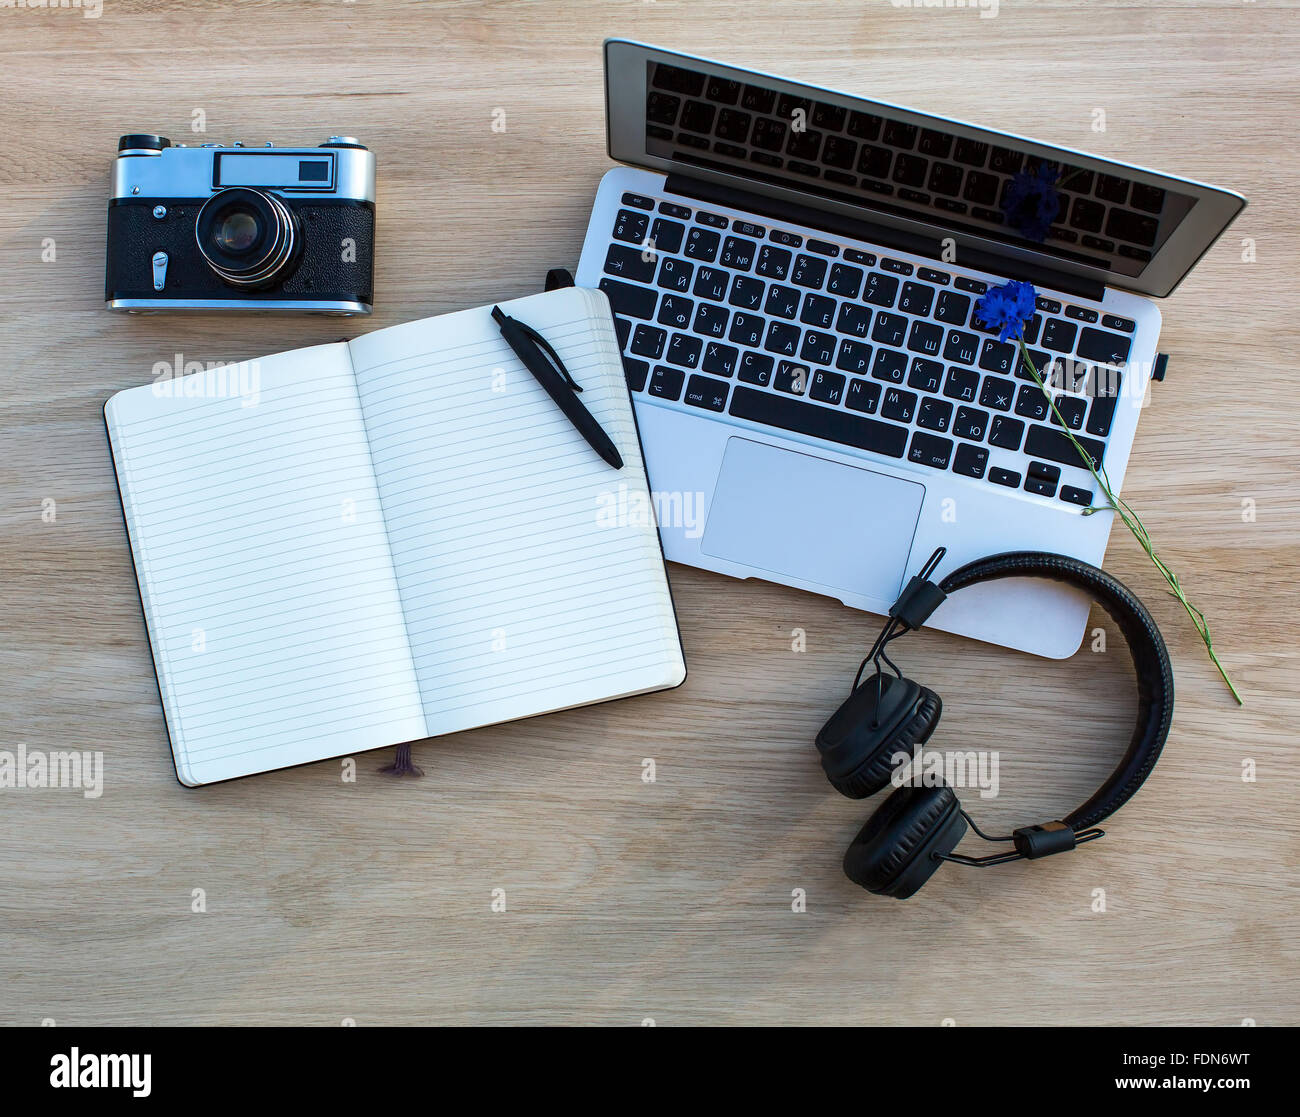 Laptop, Kamera, Kopfhörer und ein Notebook mit einem Stift auf einem  Holztisch gelegt Stockfotografie - Alamy